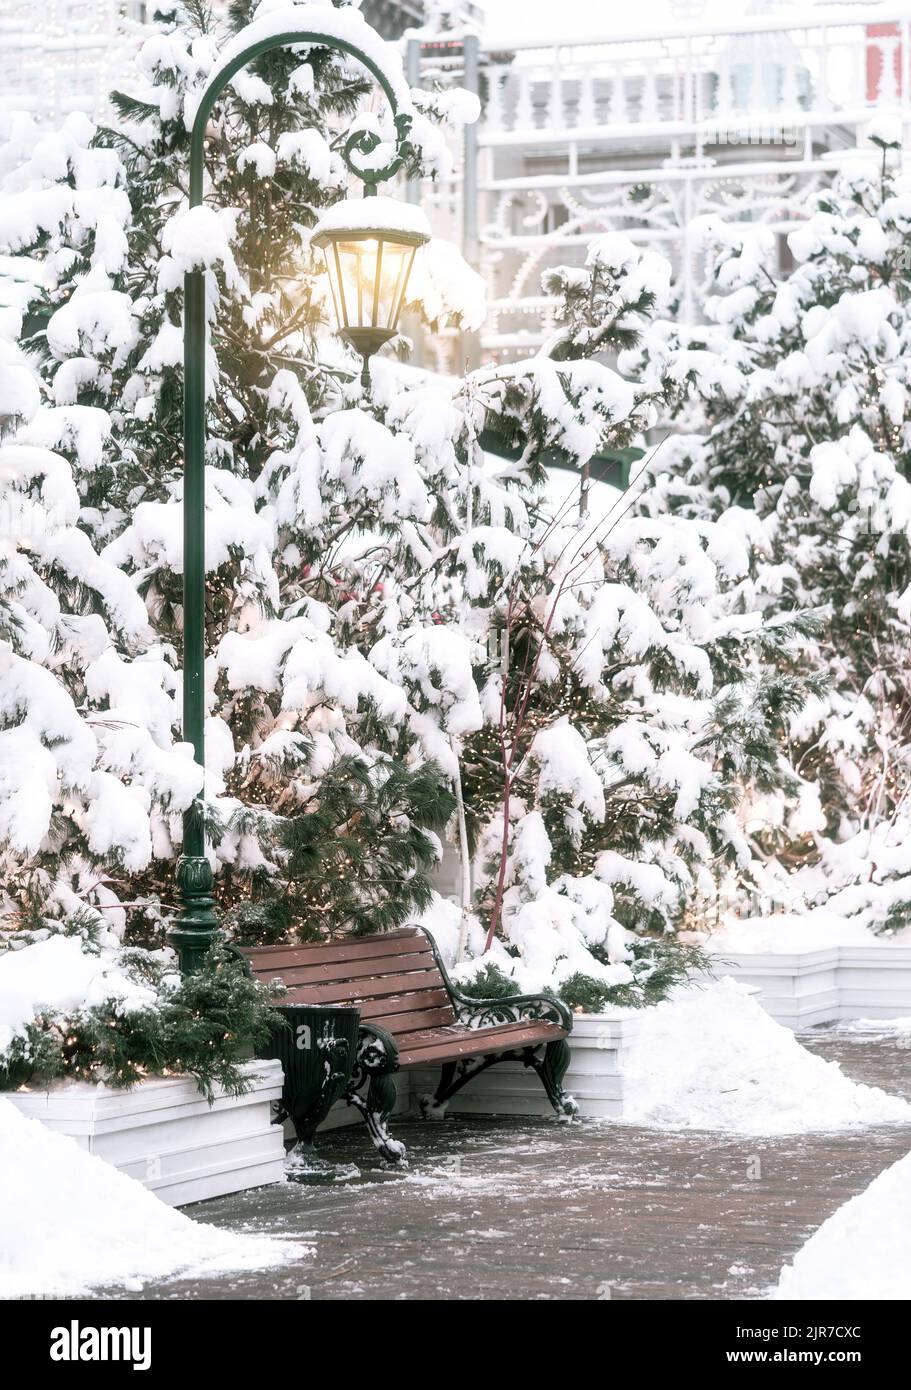 Magnifique feu de rue lumineux au-dessus du banc de parc entouré de sapins enneigés avec des lumières de la foire traditionnelle de Noël. Concept de vacances. Hiver saison des vacances arrière-plan. Banque D'Images